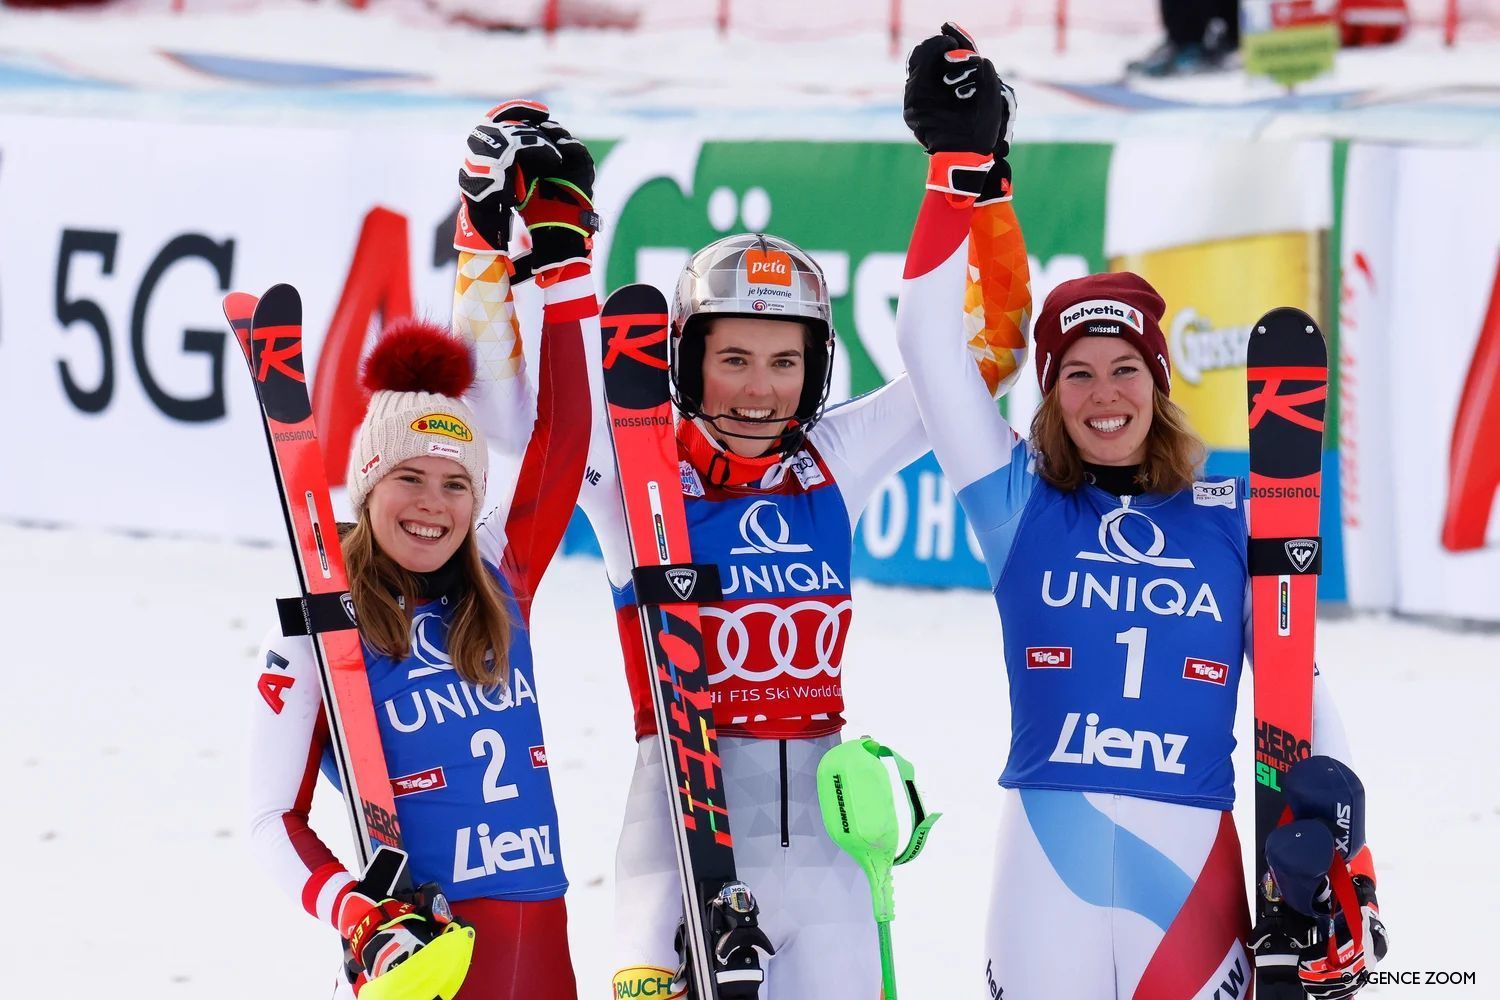 Imagen del podio del slalom femenino de Lienz 2021